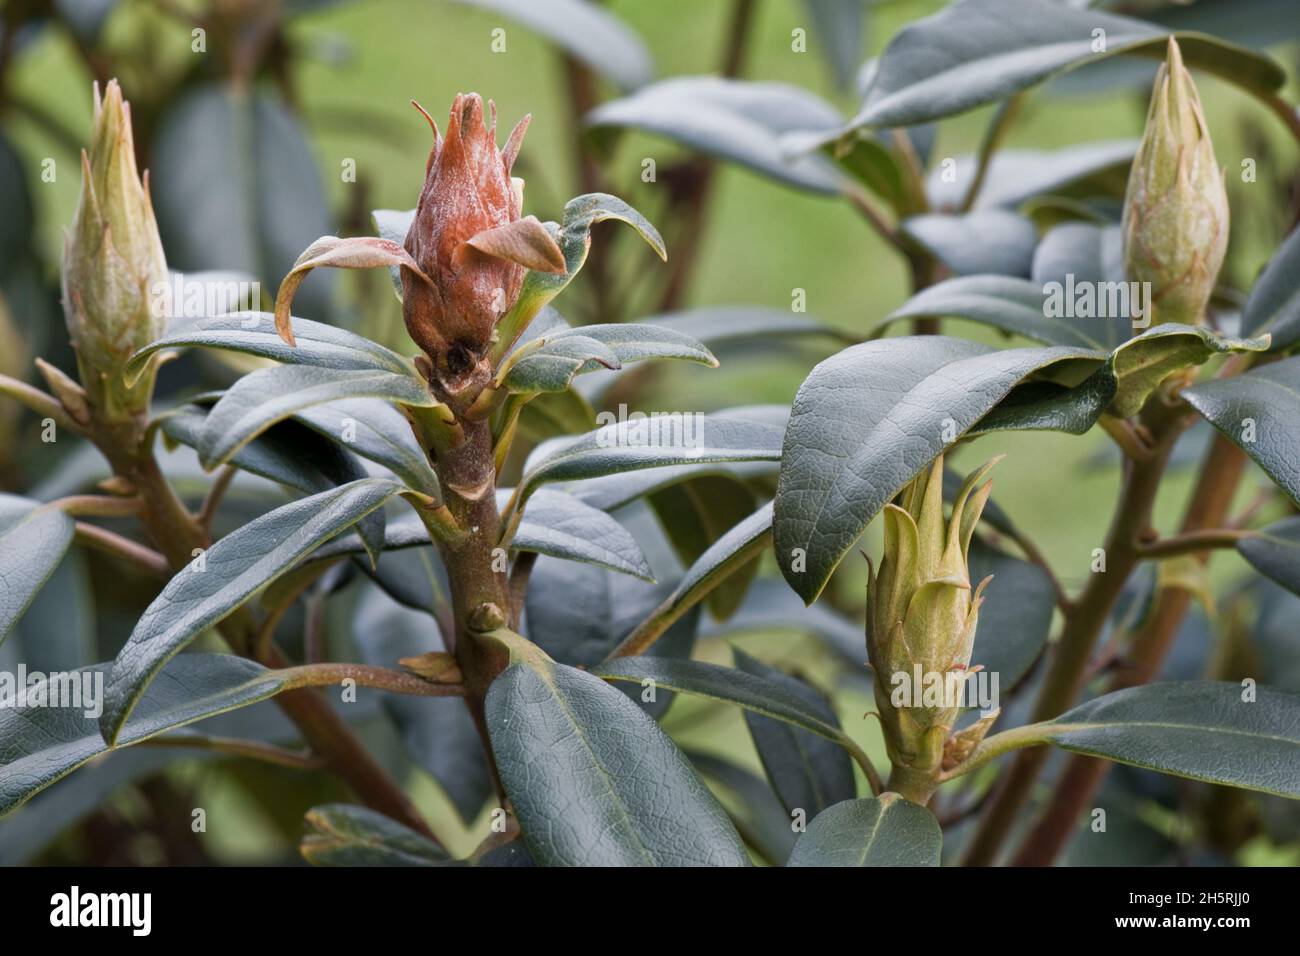 Bourgeons (Pycnotysanus azaleae) morts, bruns, avortés, bourgeons de fleurs malades avec des feuilles saines, Berkshire, mars Banque D'Images